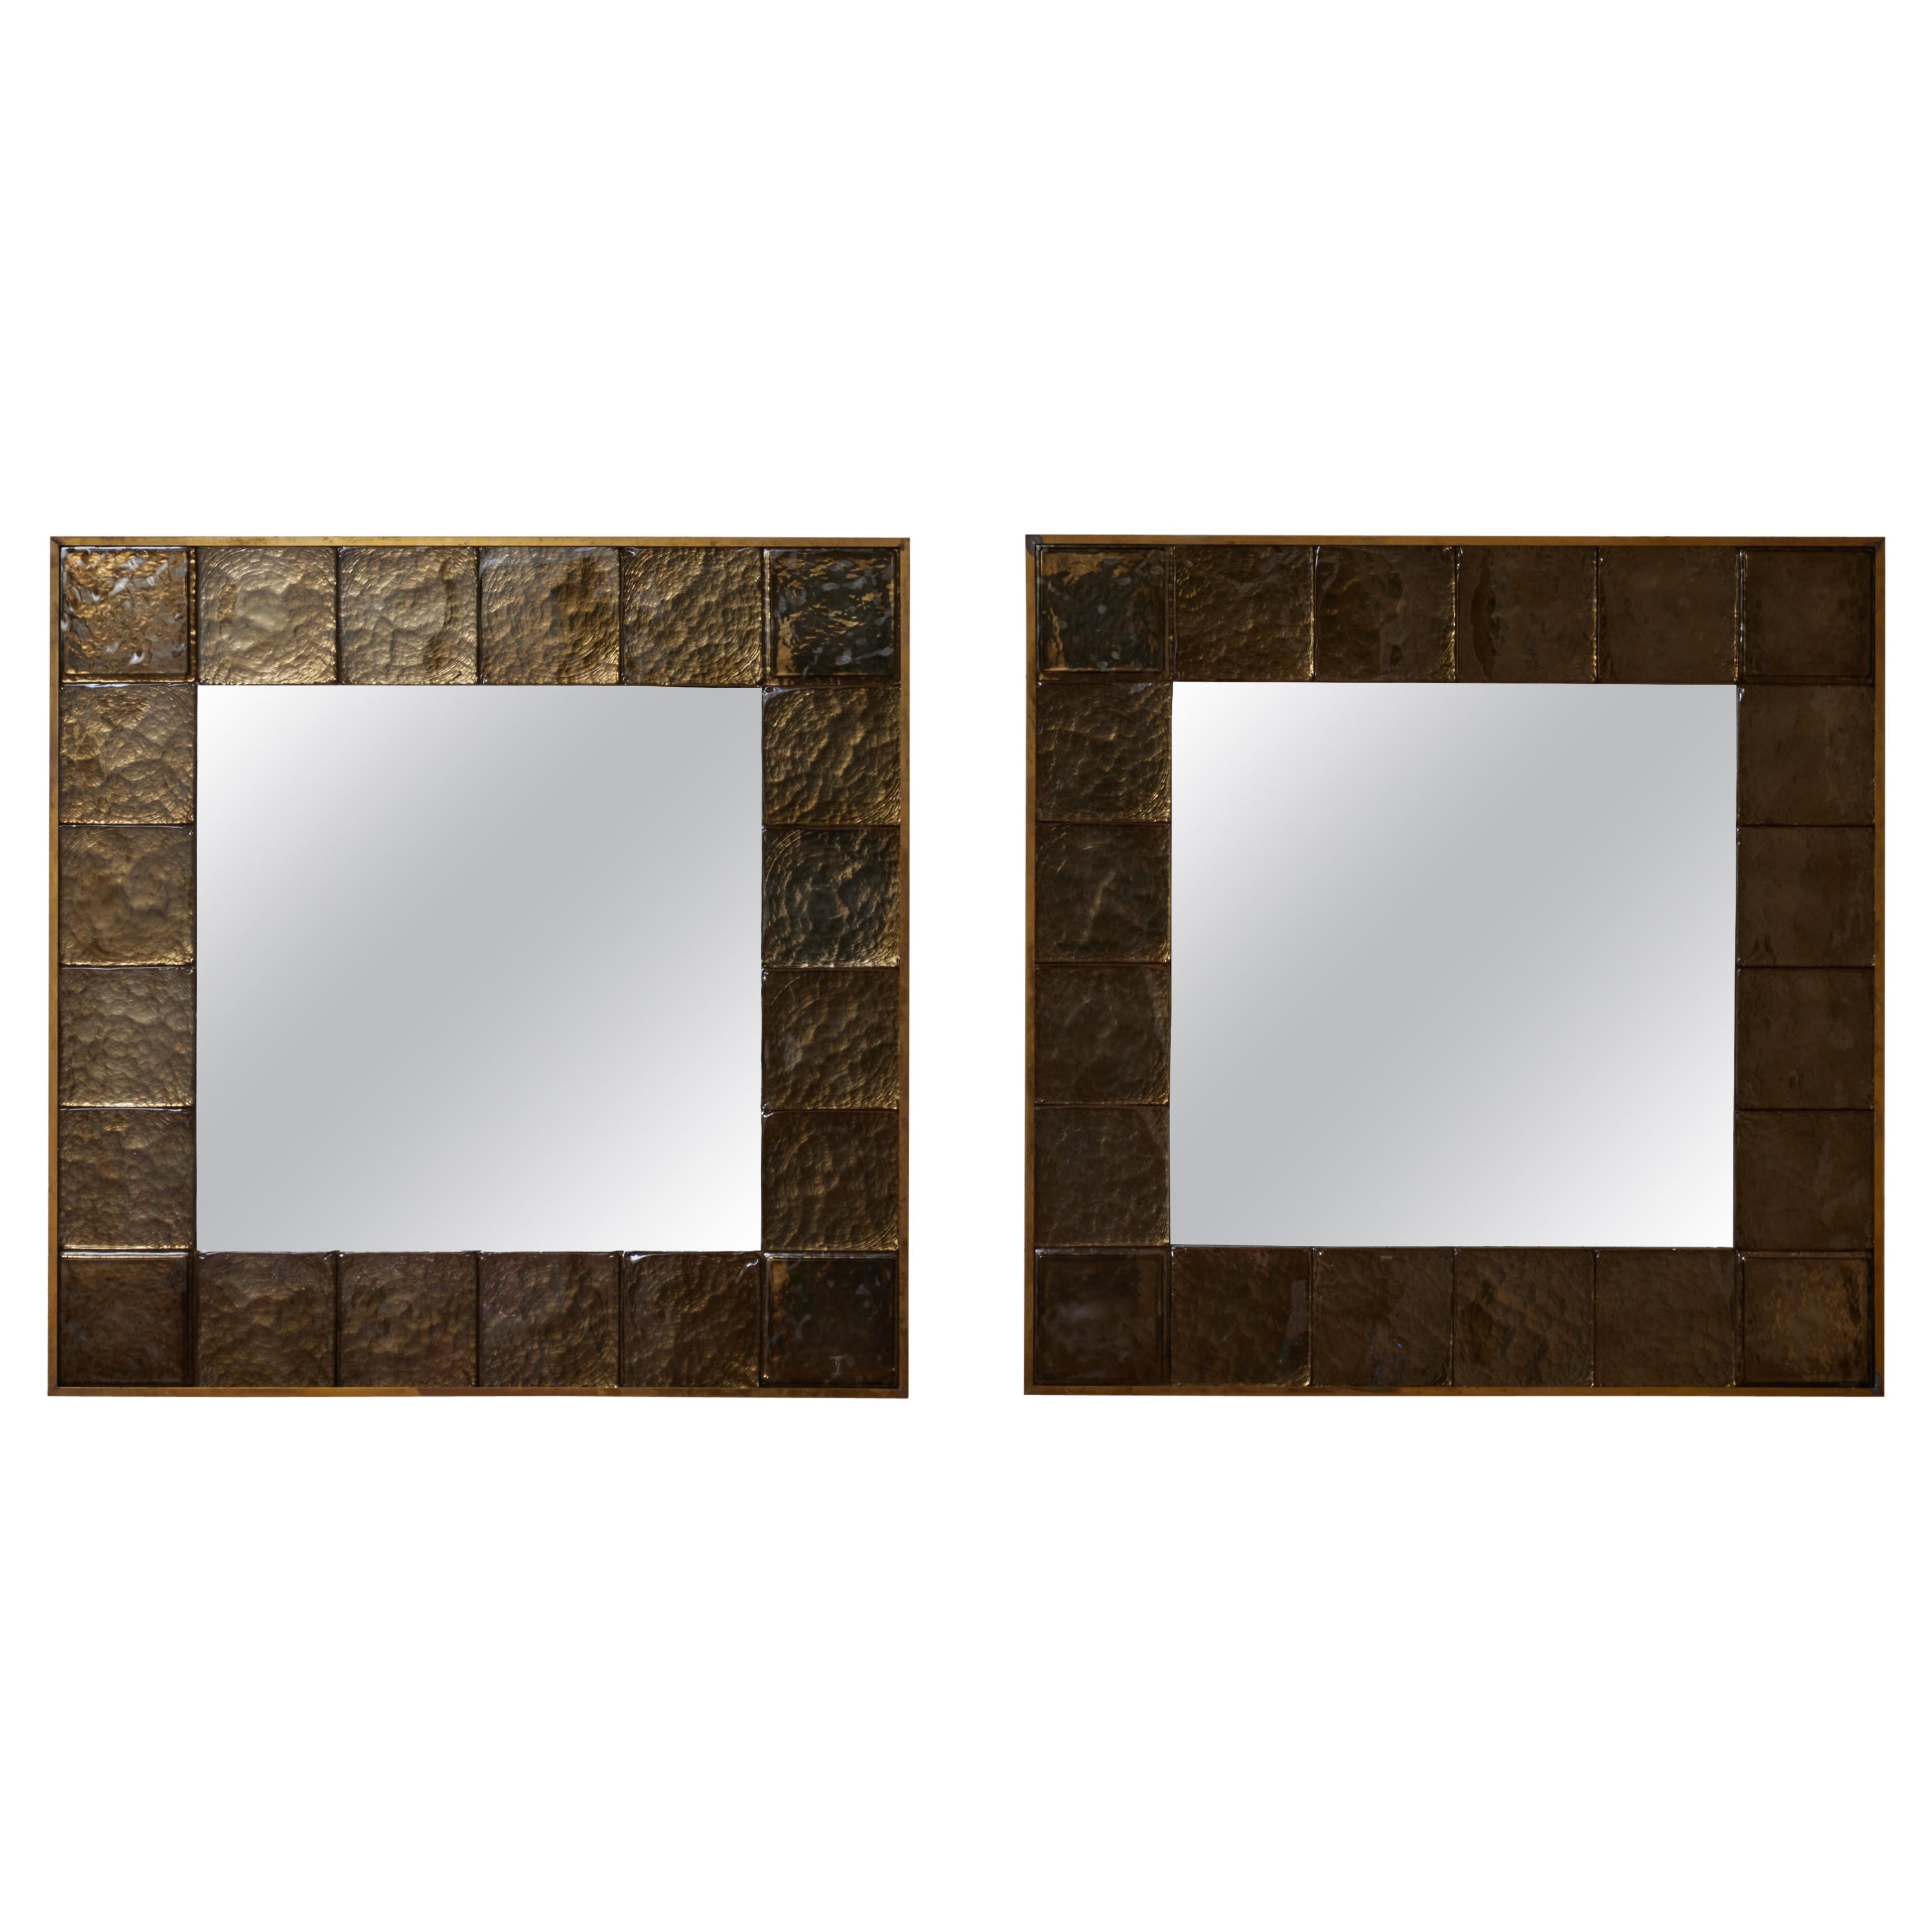 Square mirrors in Murano by Studio Glustin